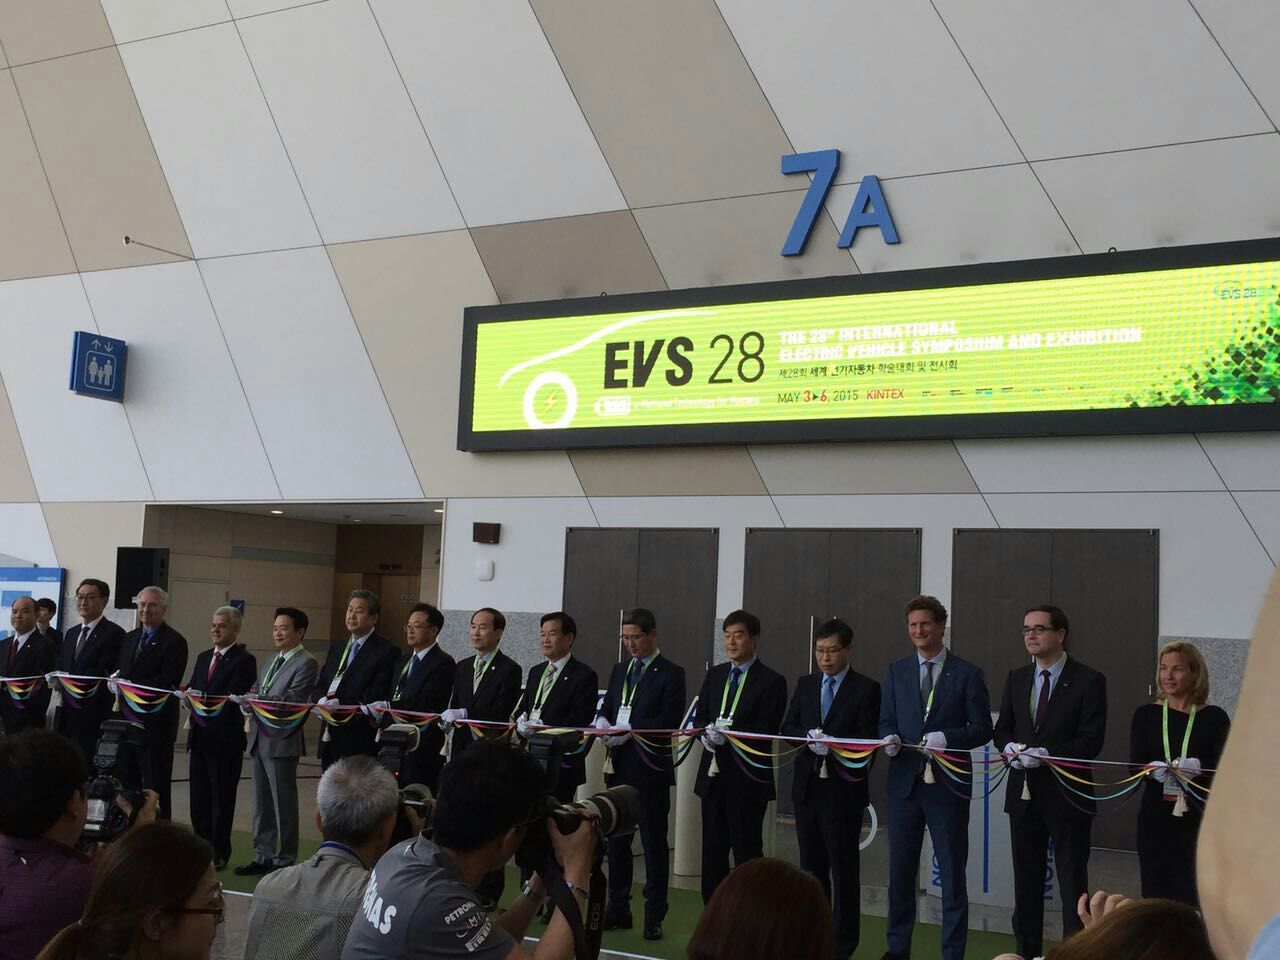 奧美格參加韓國首爾EVS28電動汽車展